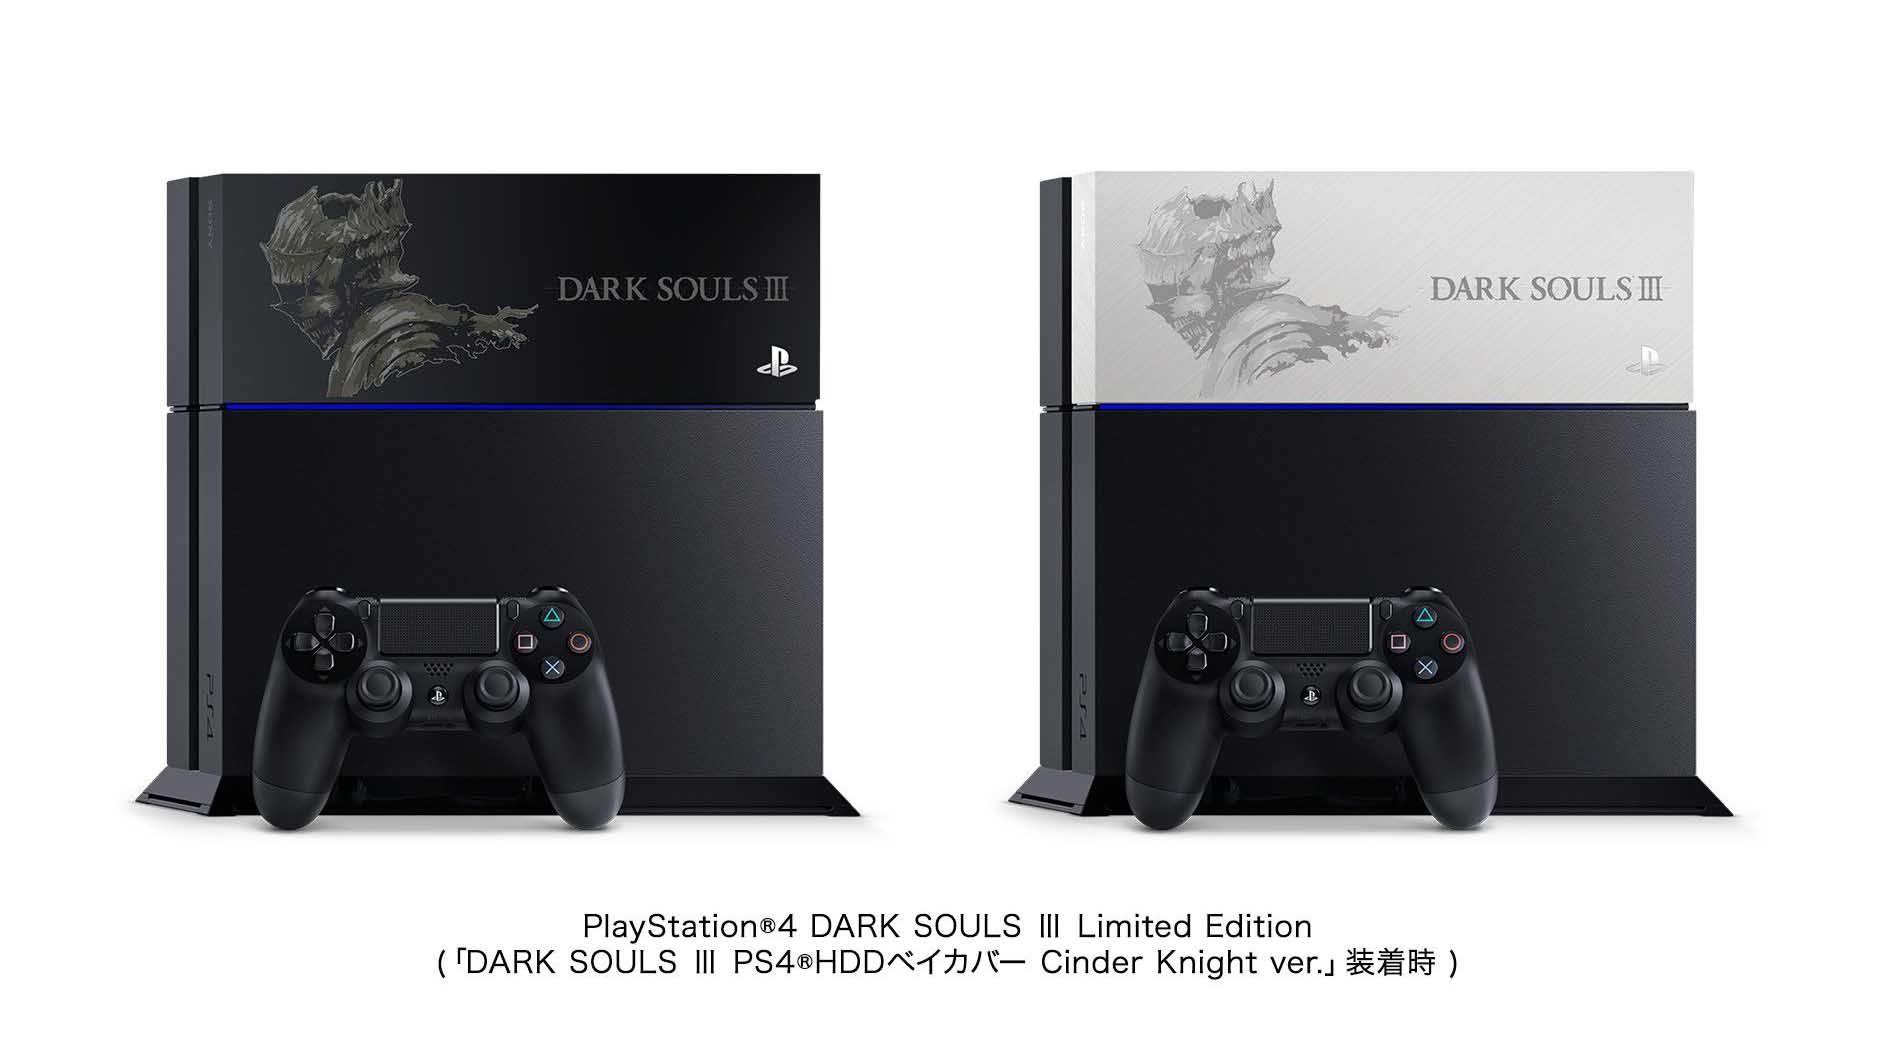 《黑暗之魂3》主题限定版PS4 索尼日本独家提